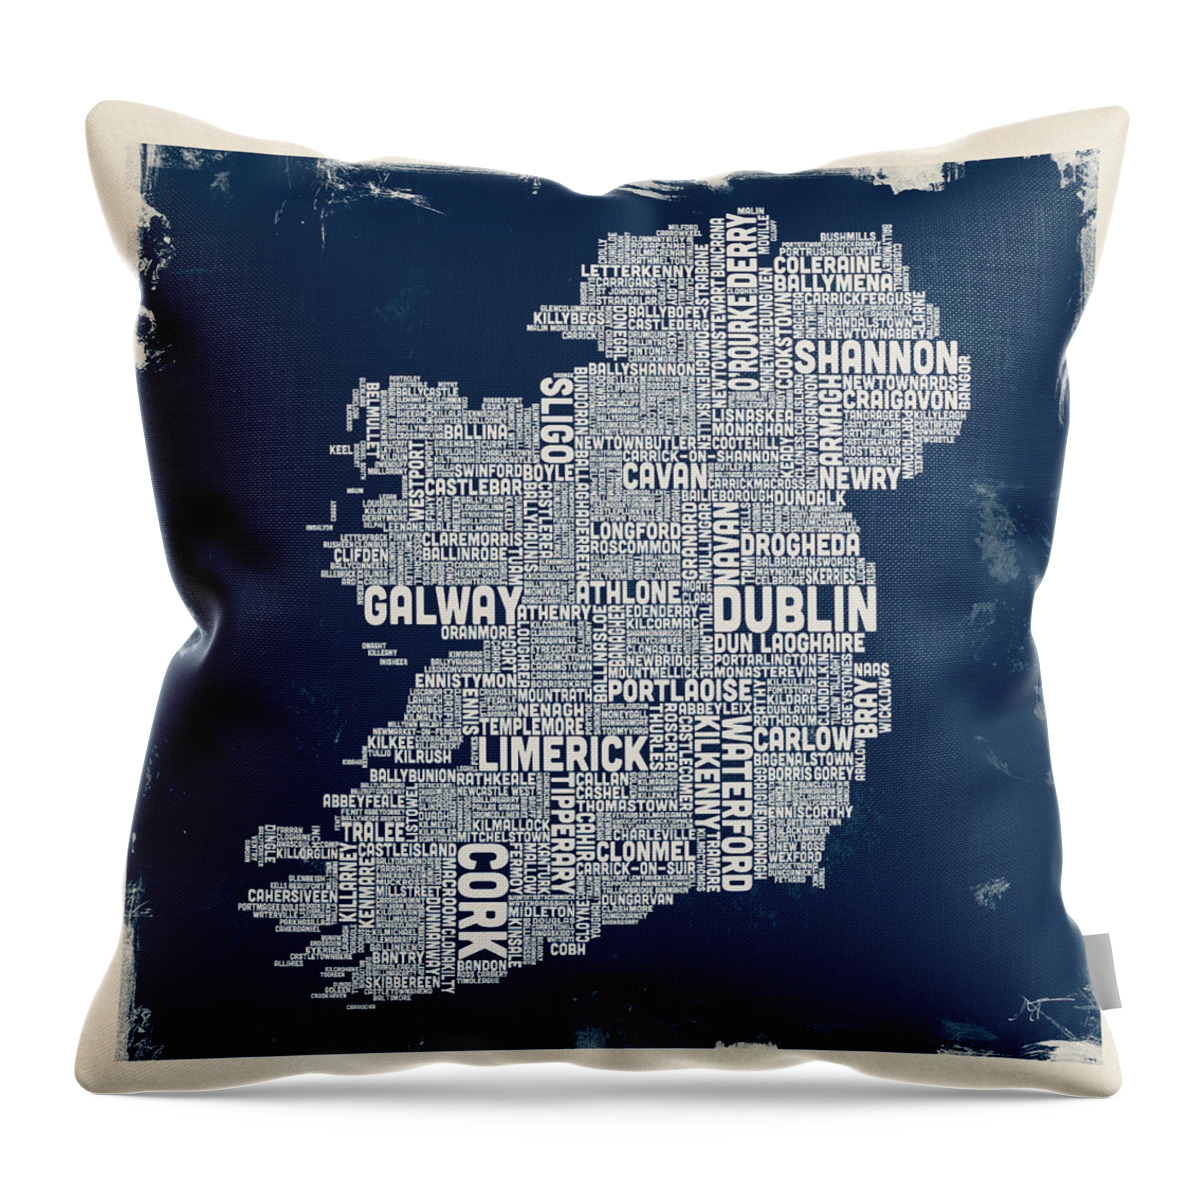 Ireland Map Throw Pillow featuring the digital art Custom Ireland City Text map by Michael Tompsett